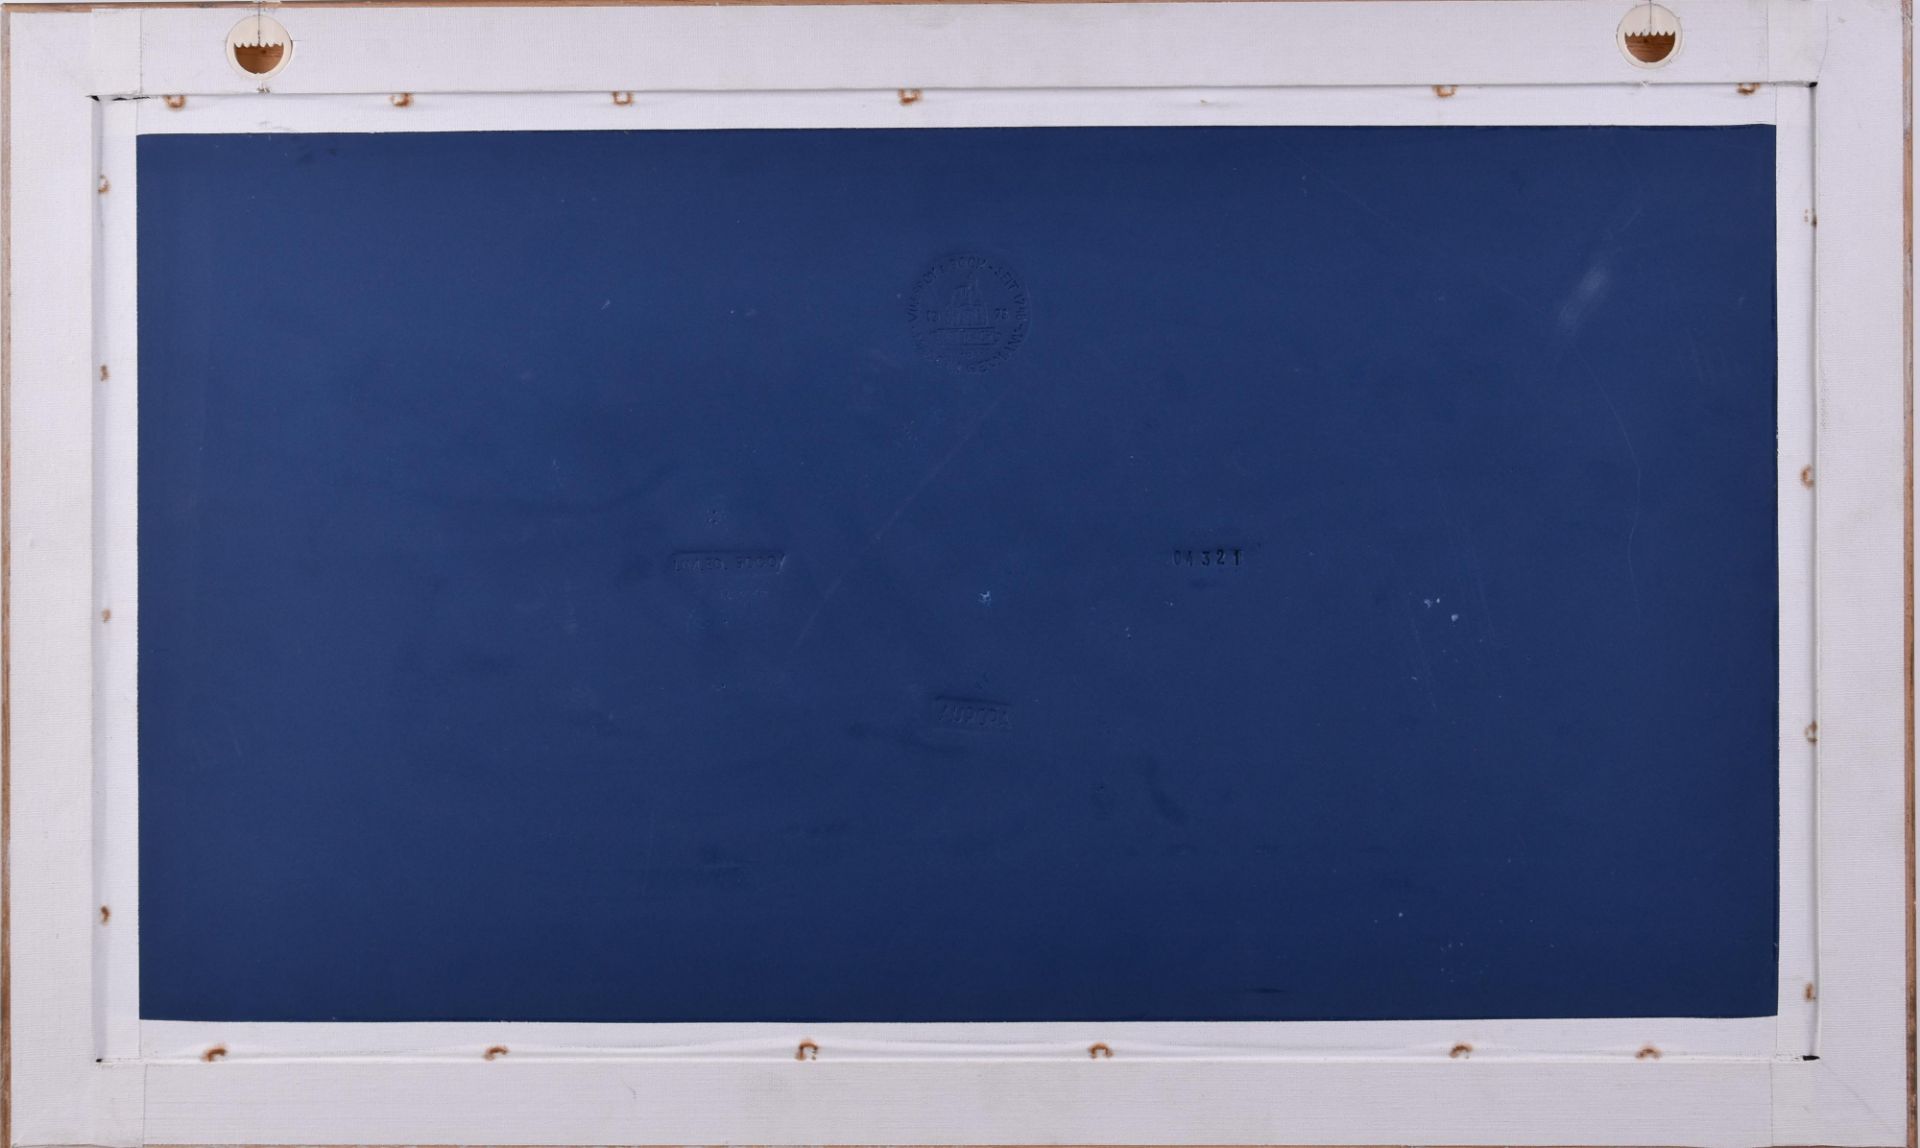 Porzellanbildplatte Aurora Villeroy & Bochmythologische Szene, Weißporzellan auf blauem Grund, - Bild 5 aus 5